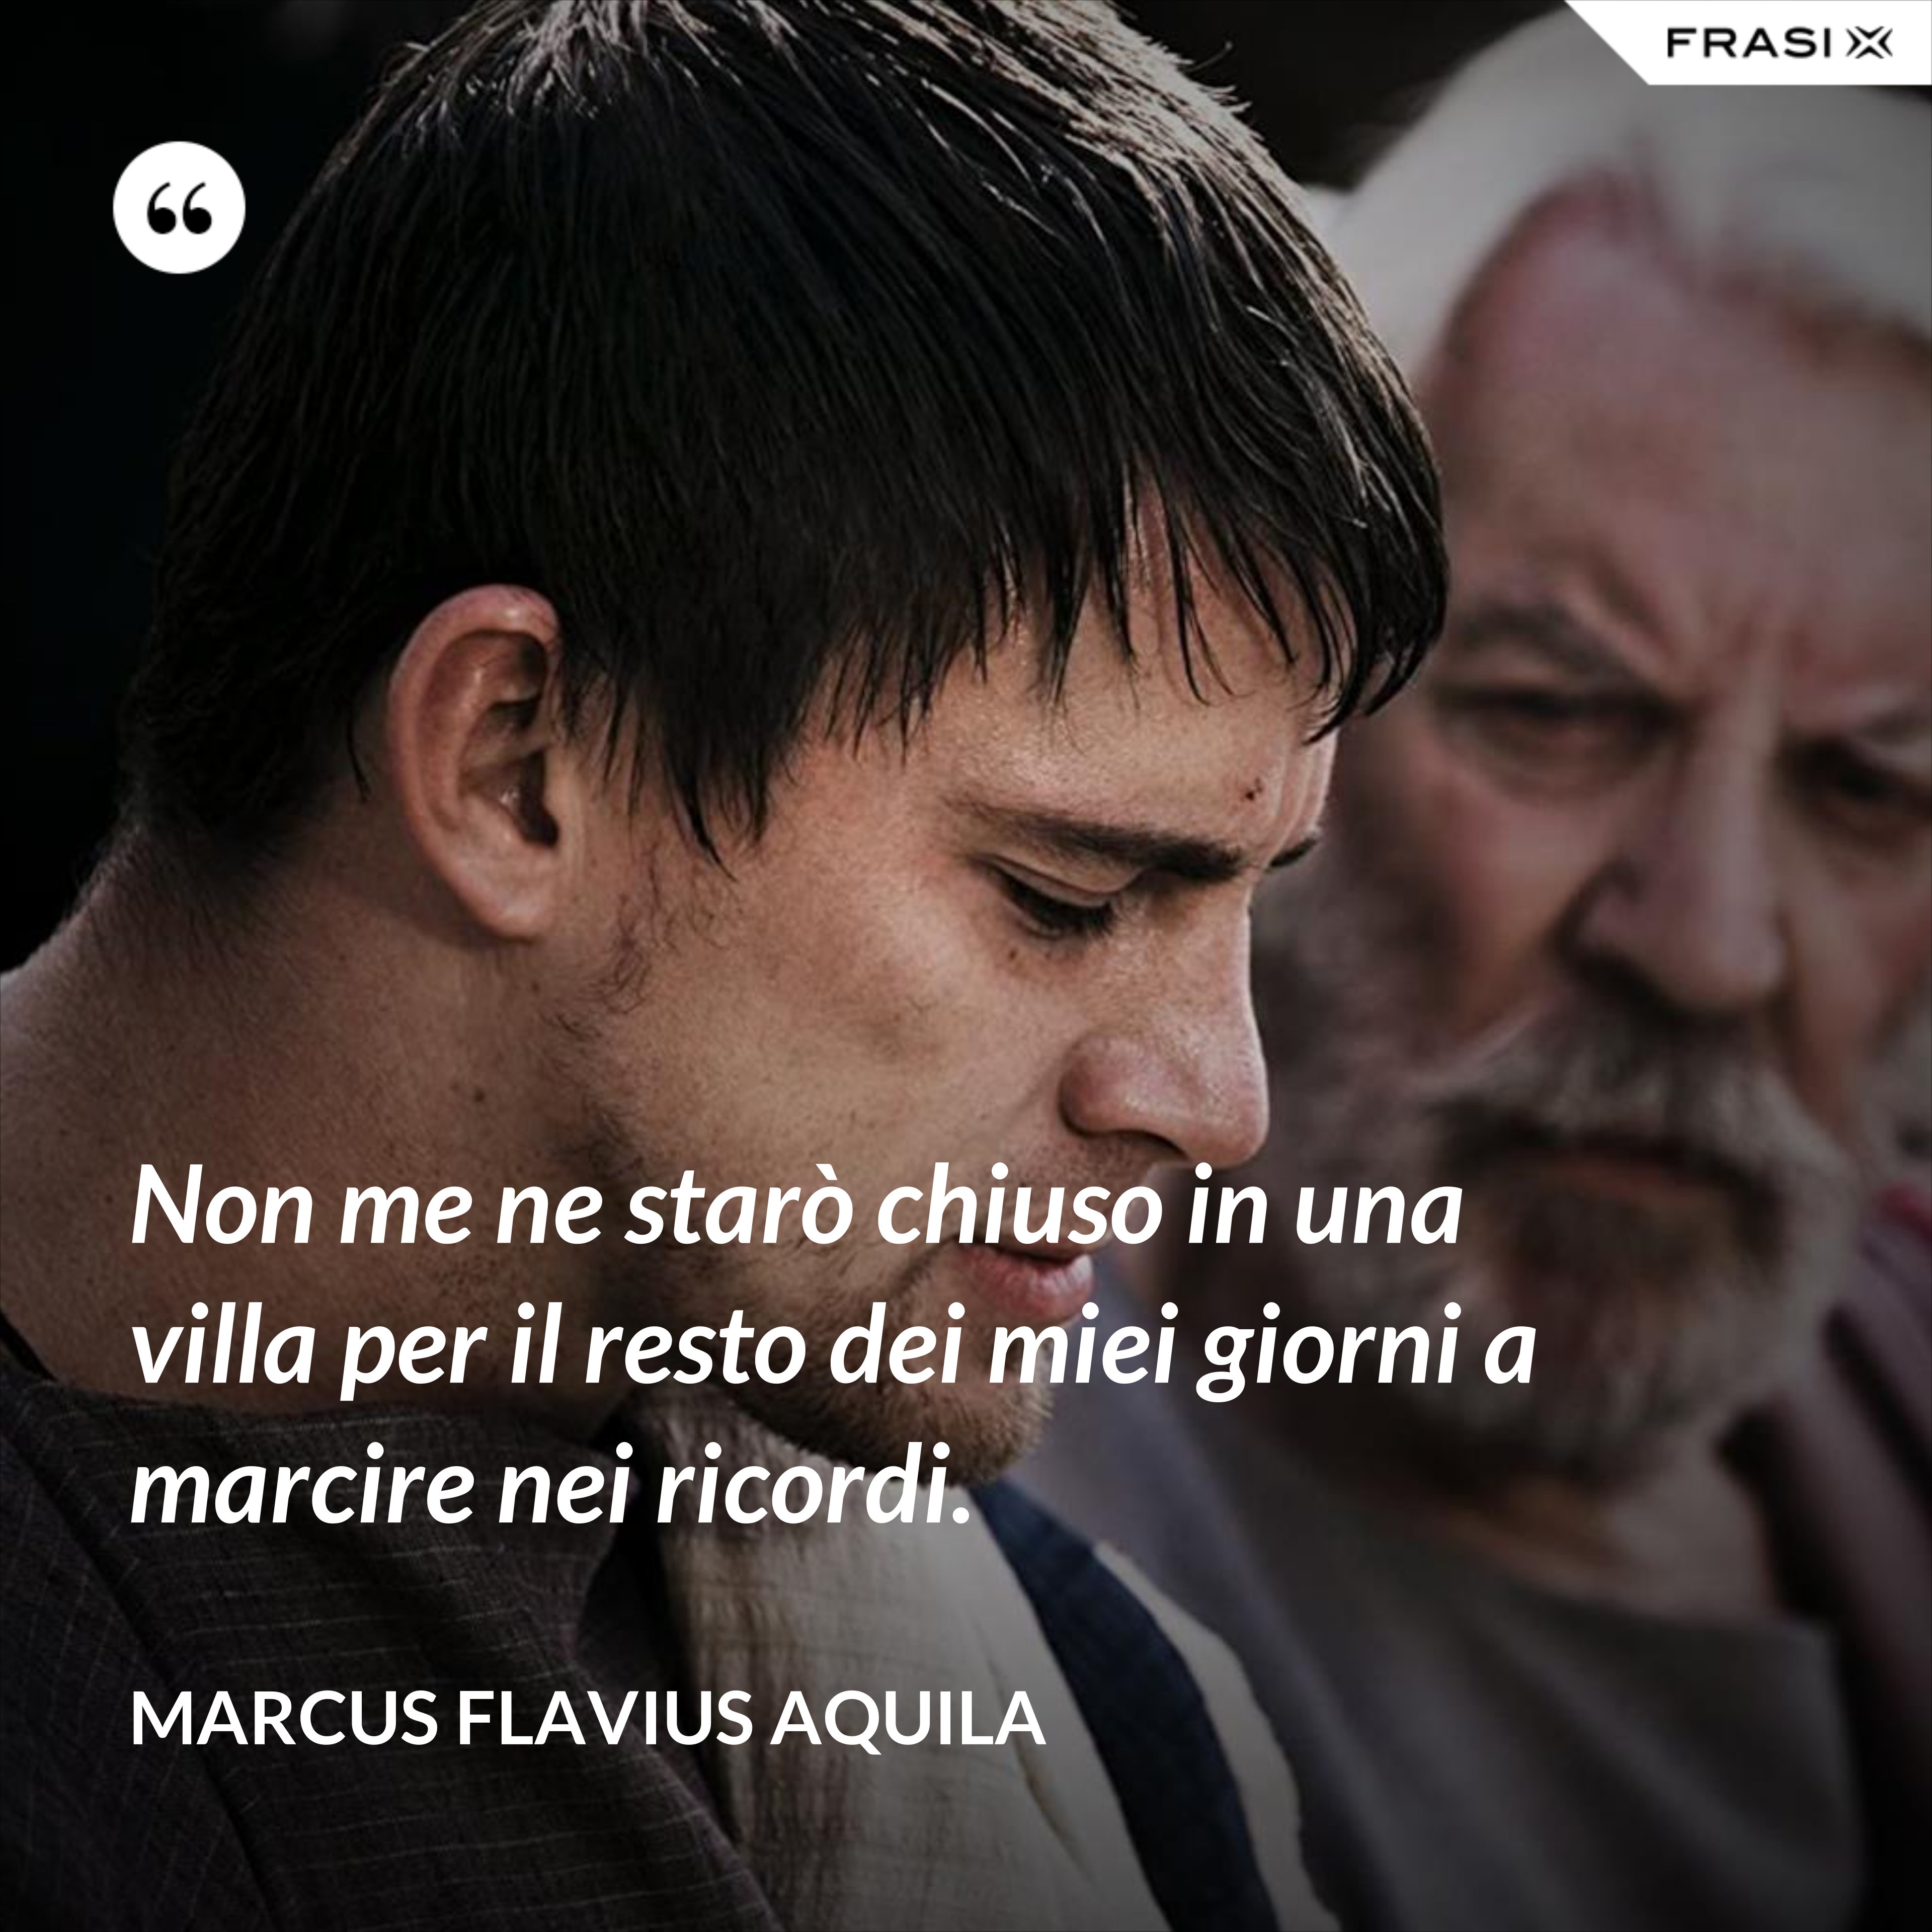 Non me ne starò chiuso in una villa per il resto dei miei giorni a marcire nei ricordi. - Marcus Flavius Aquila